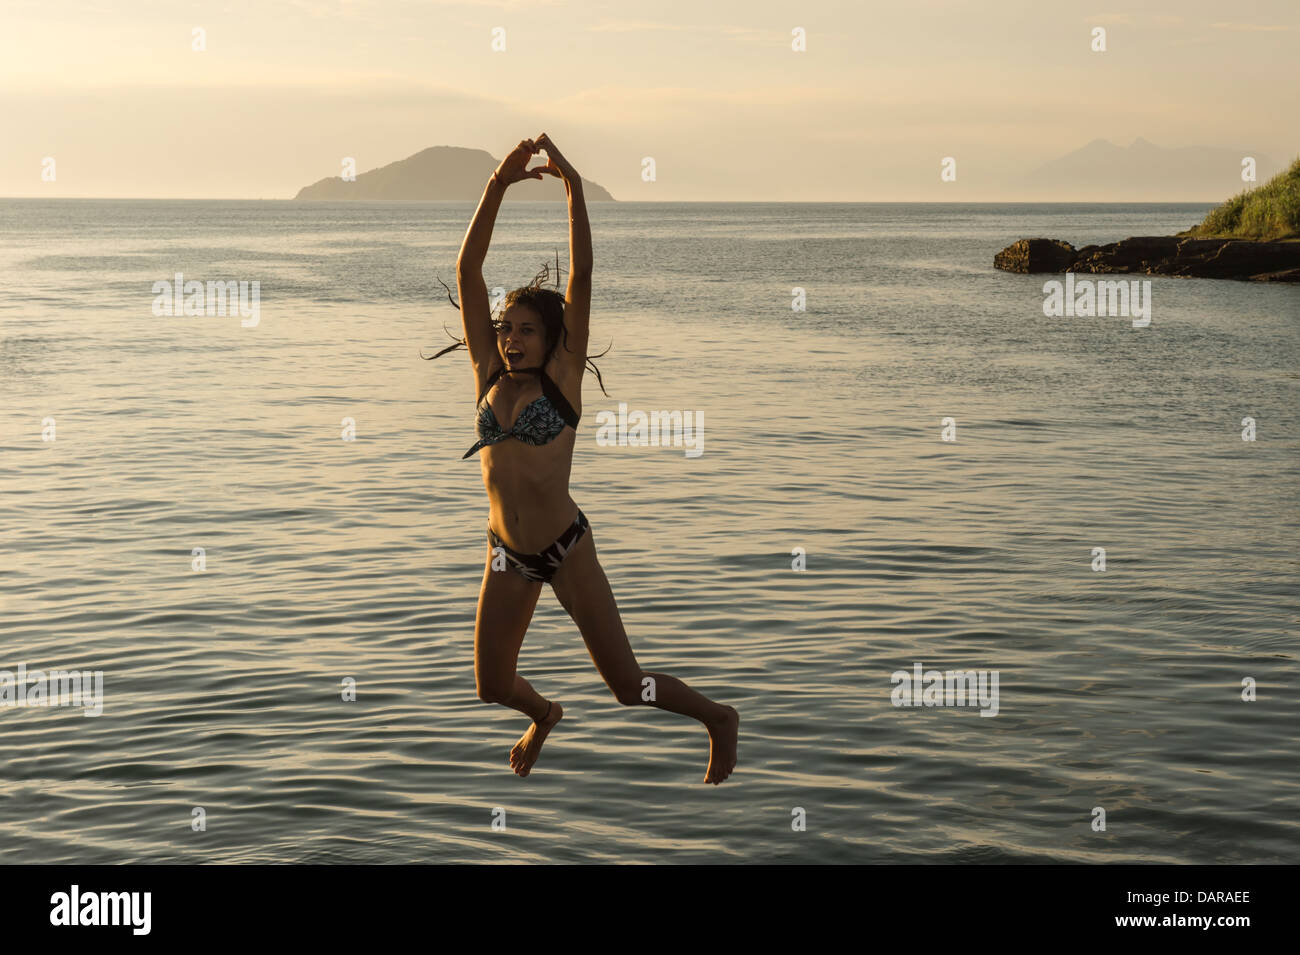 Girl jumping into the water, Porto da Barra, Buzios, Rio de Janeiro, Brazil Stock Photo